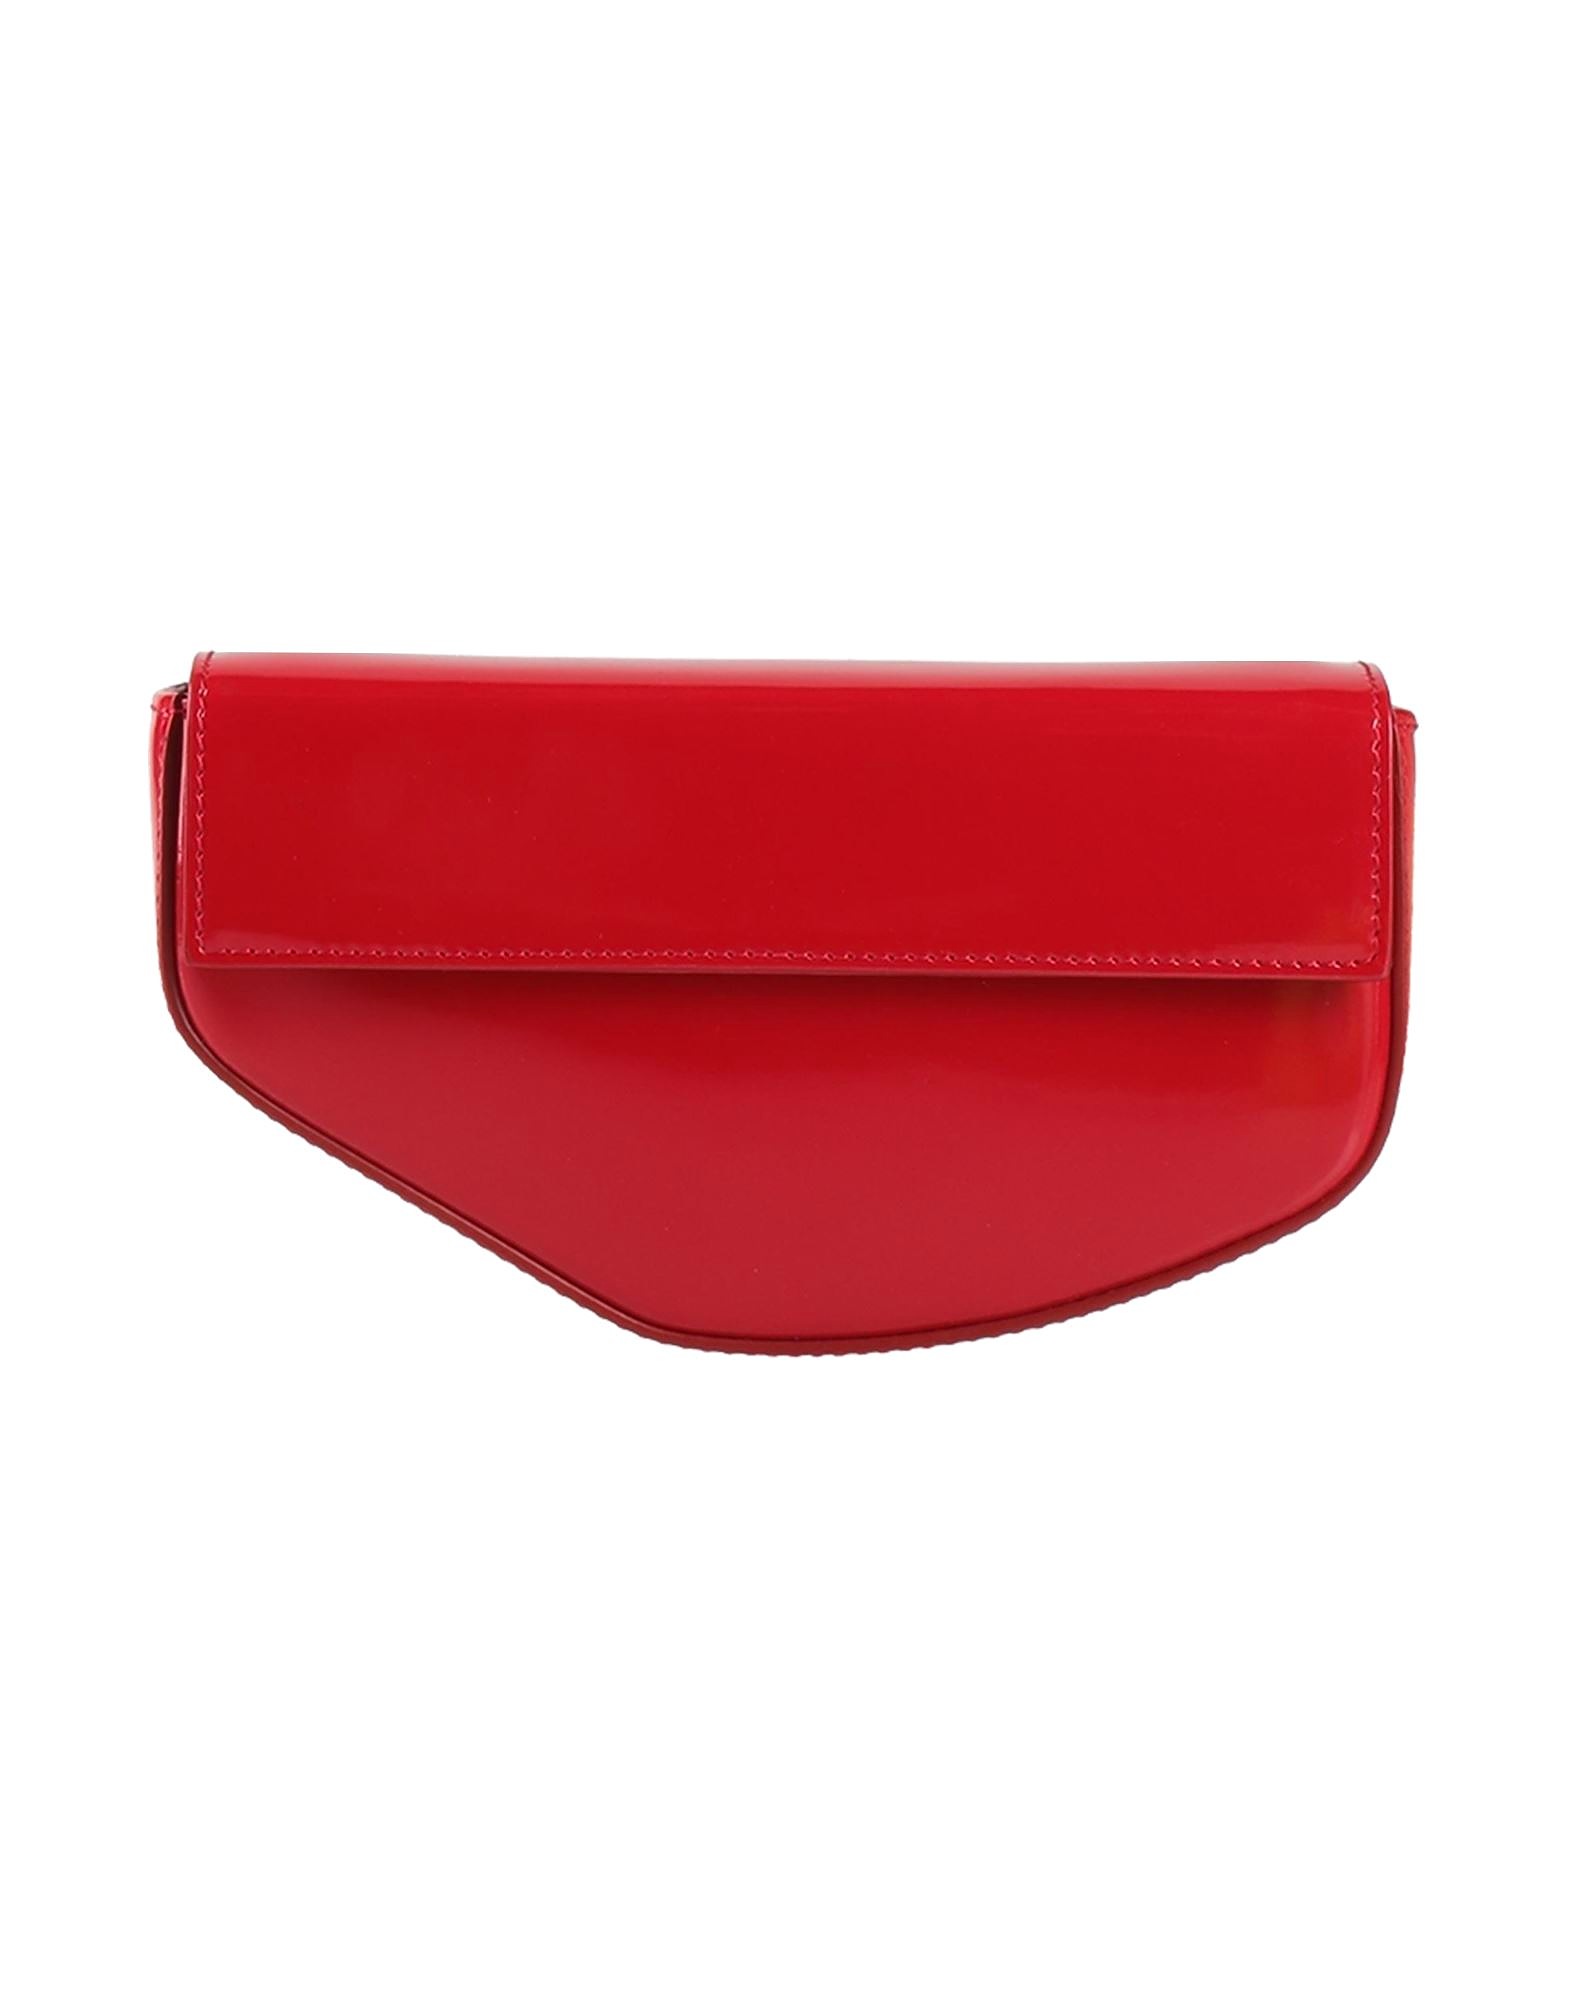 Сумка клатч Dolce & Gabbana, красный сумка пельмень кожаная золотой клатч lmr 9919 8j